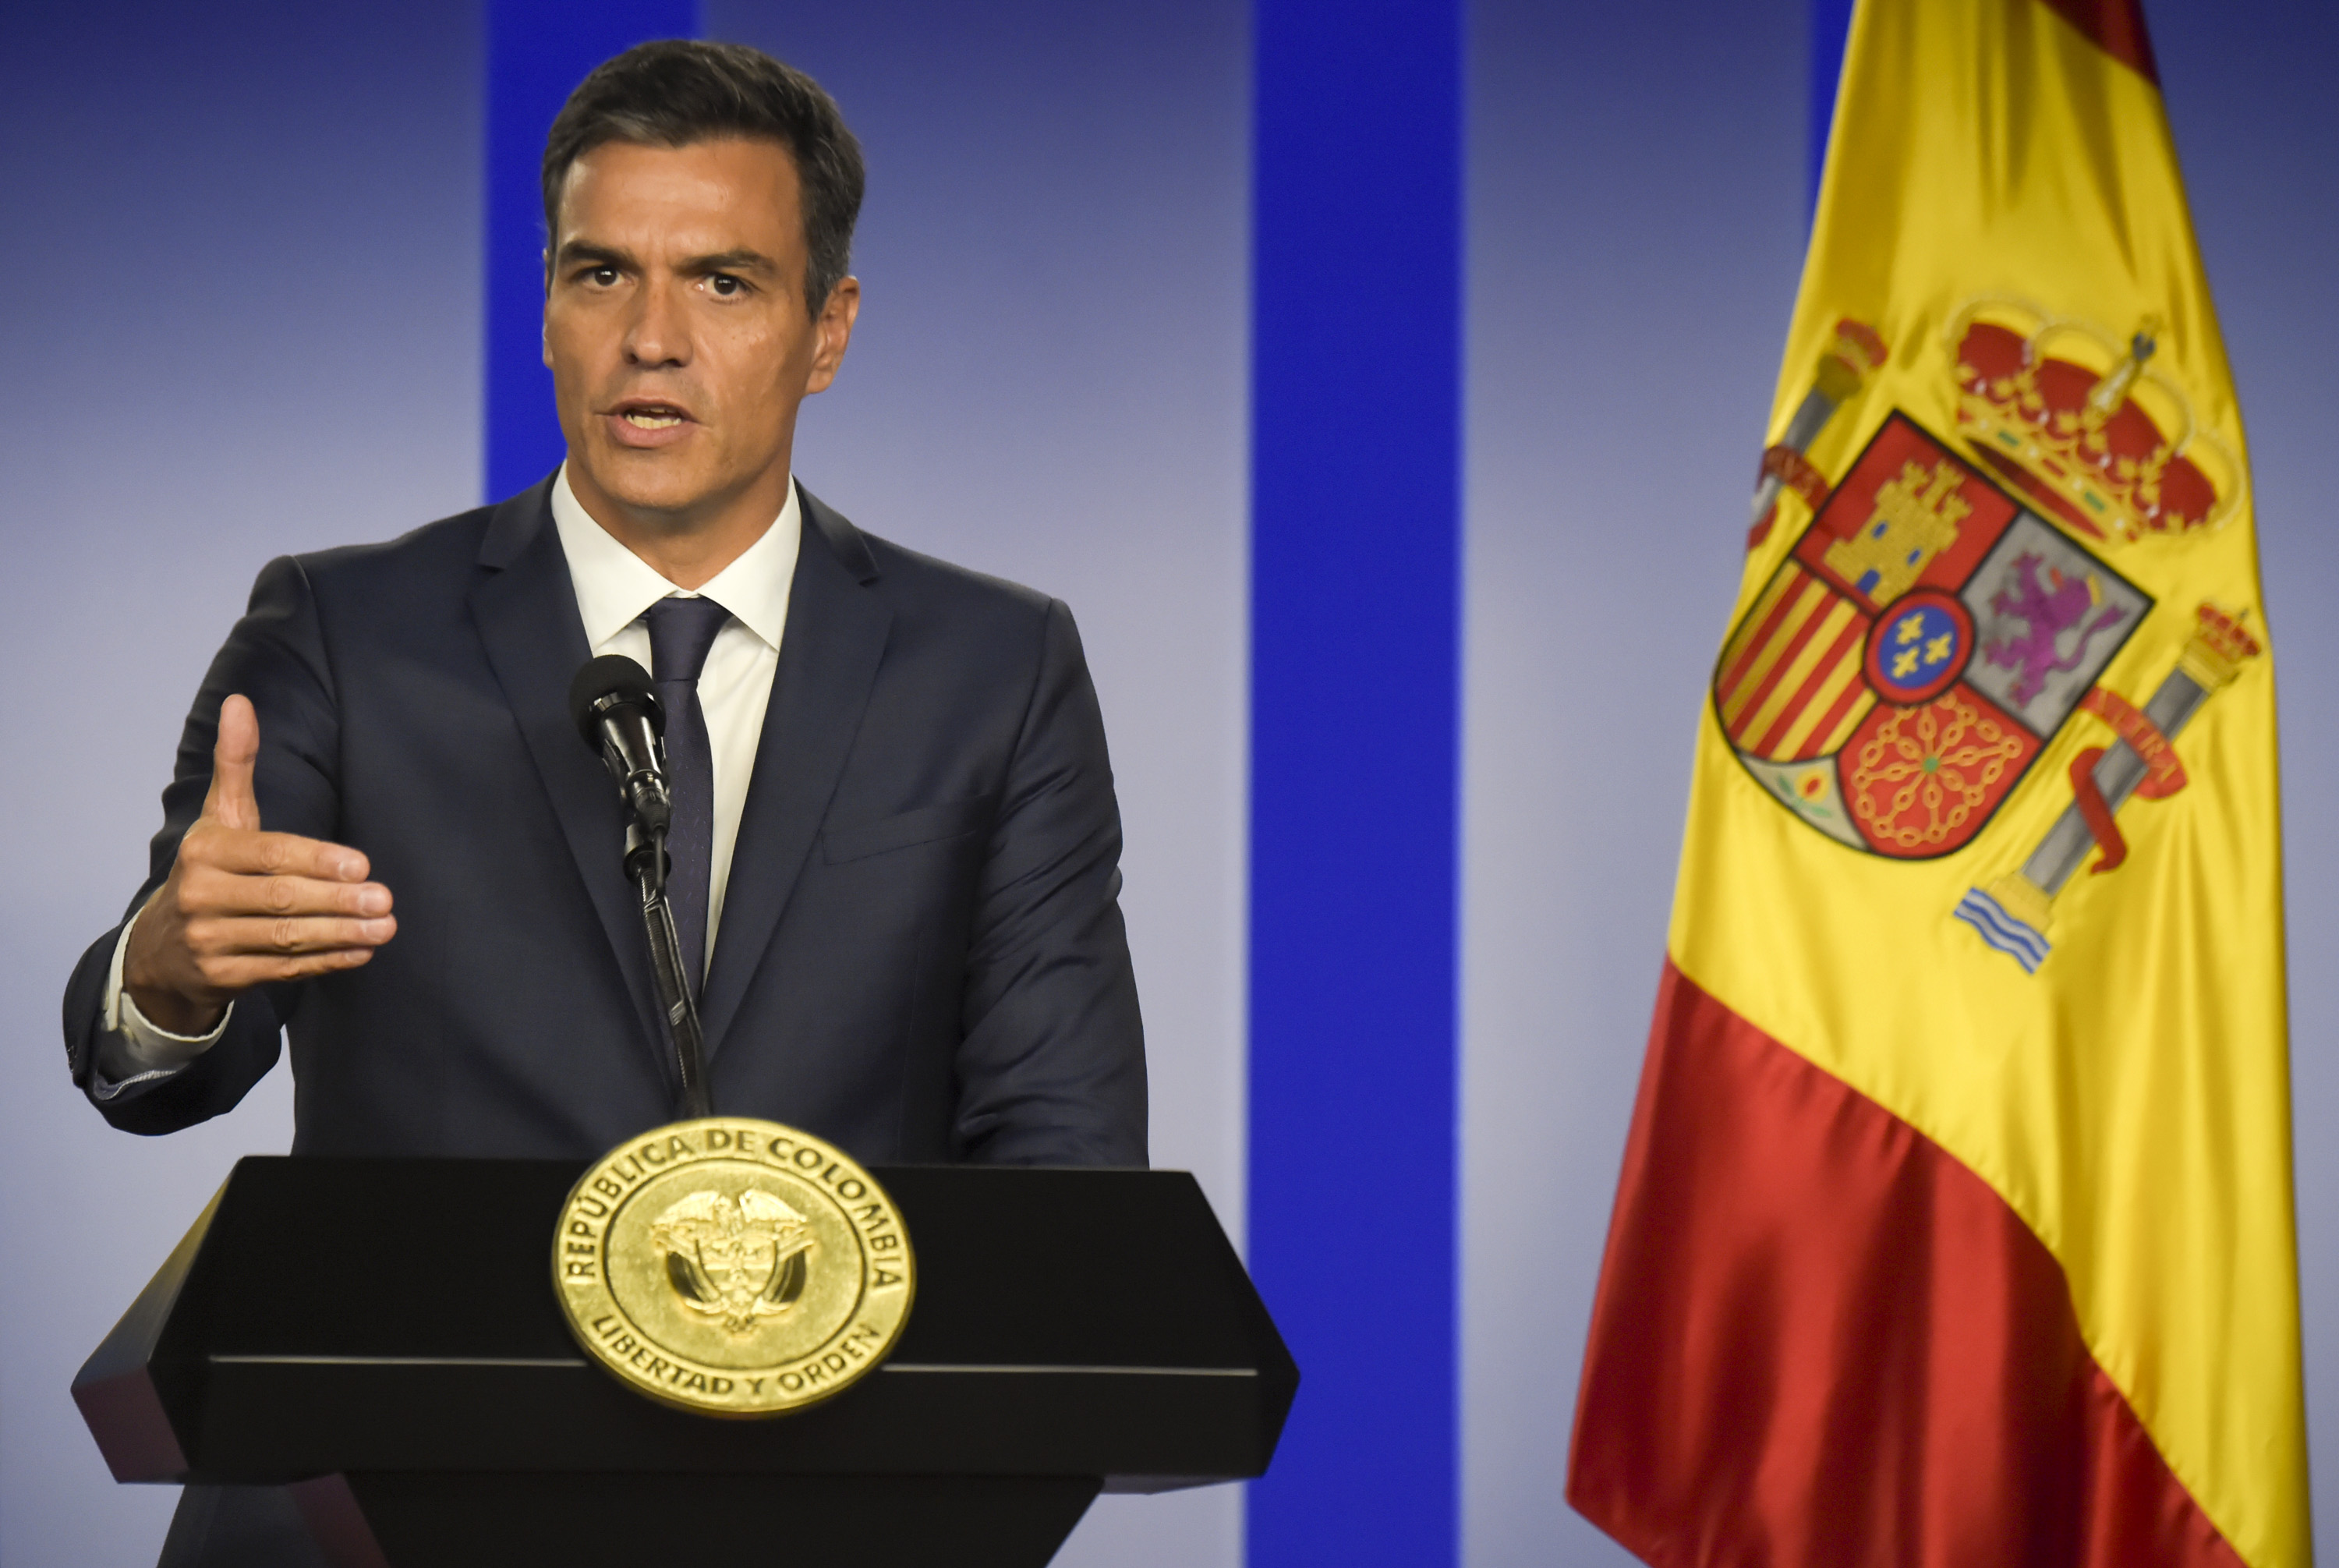 España anuncia recursos europeos para crisis migratoria venezolana